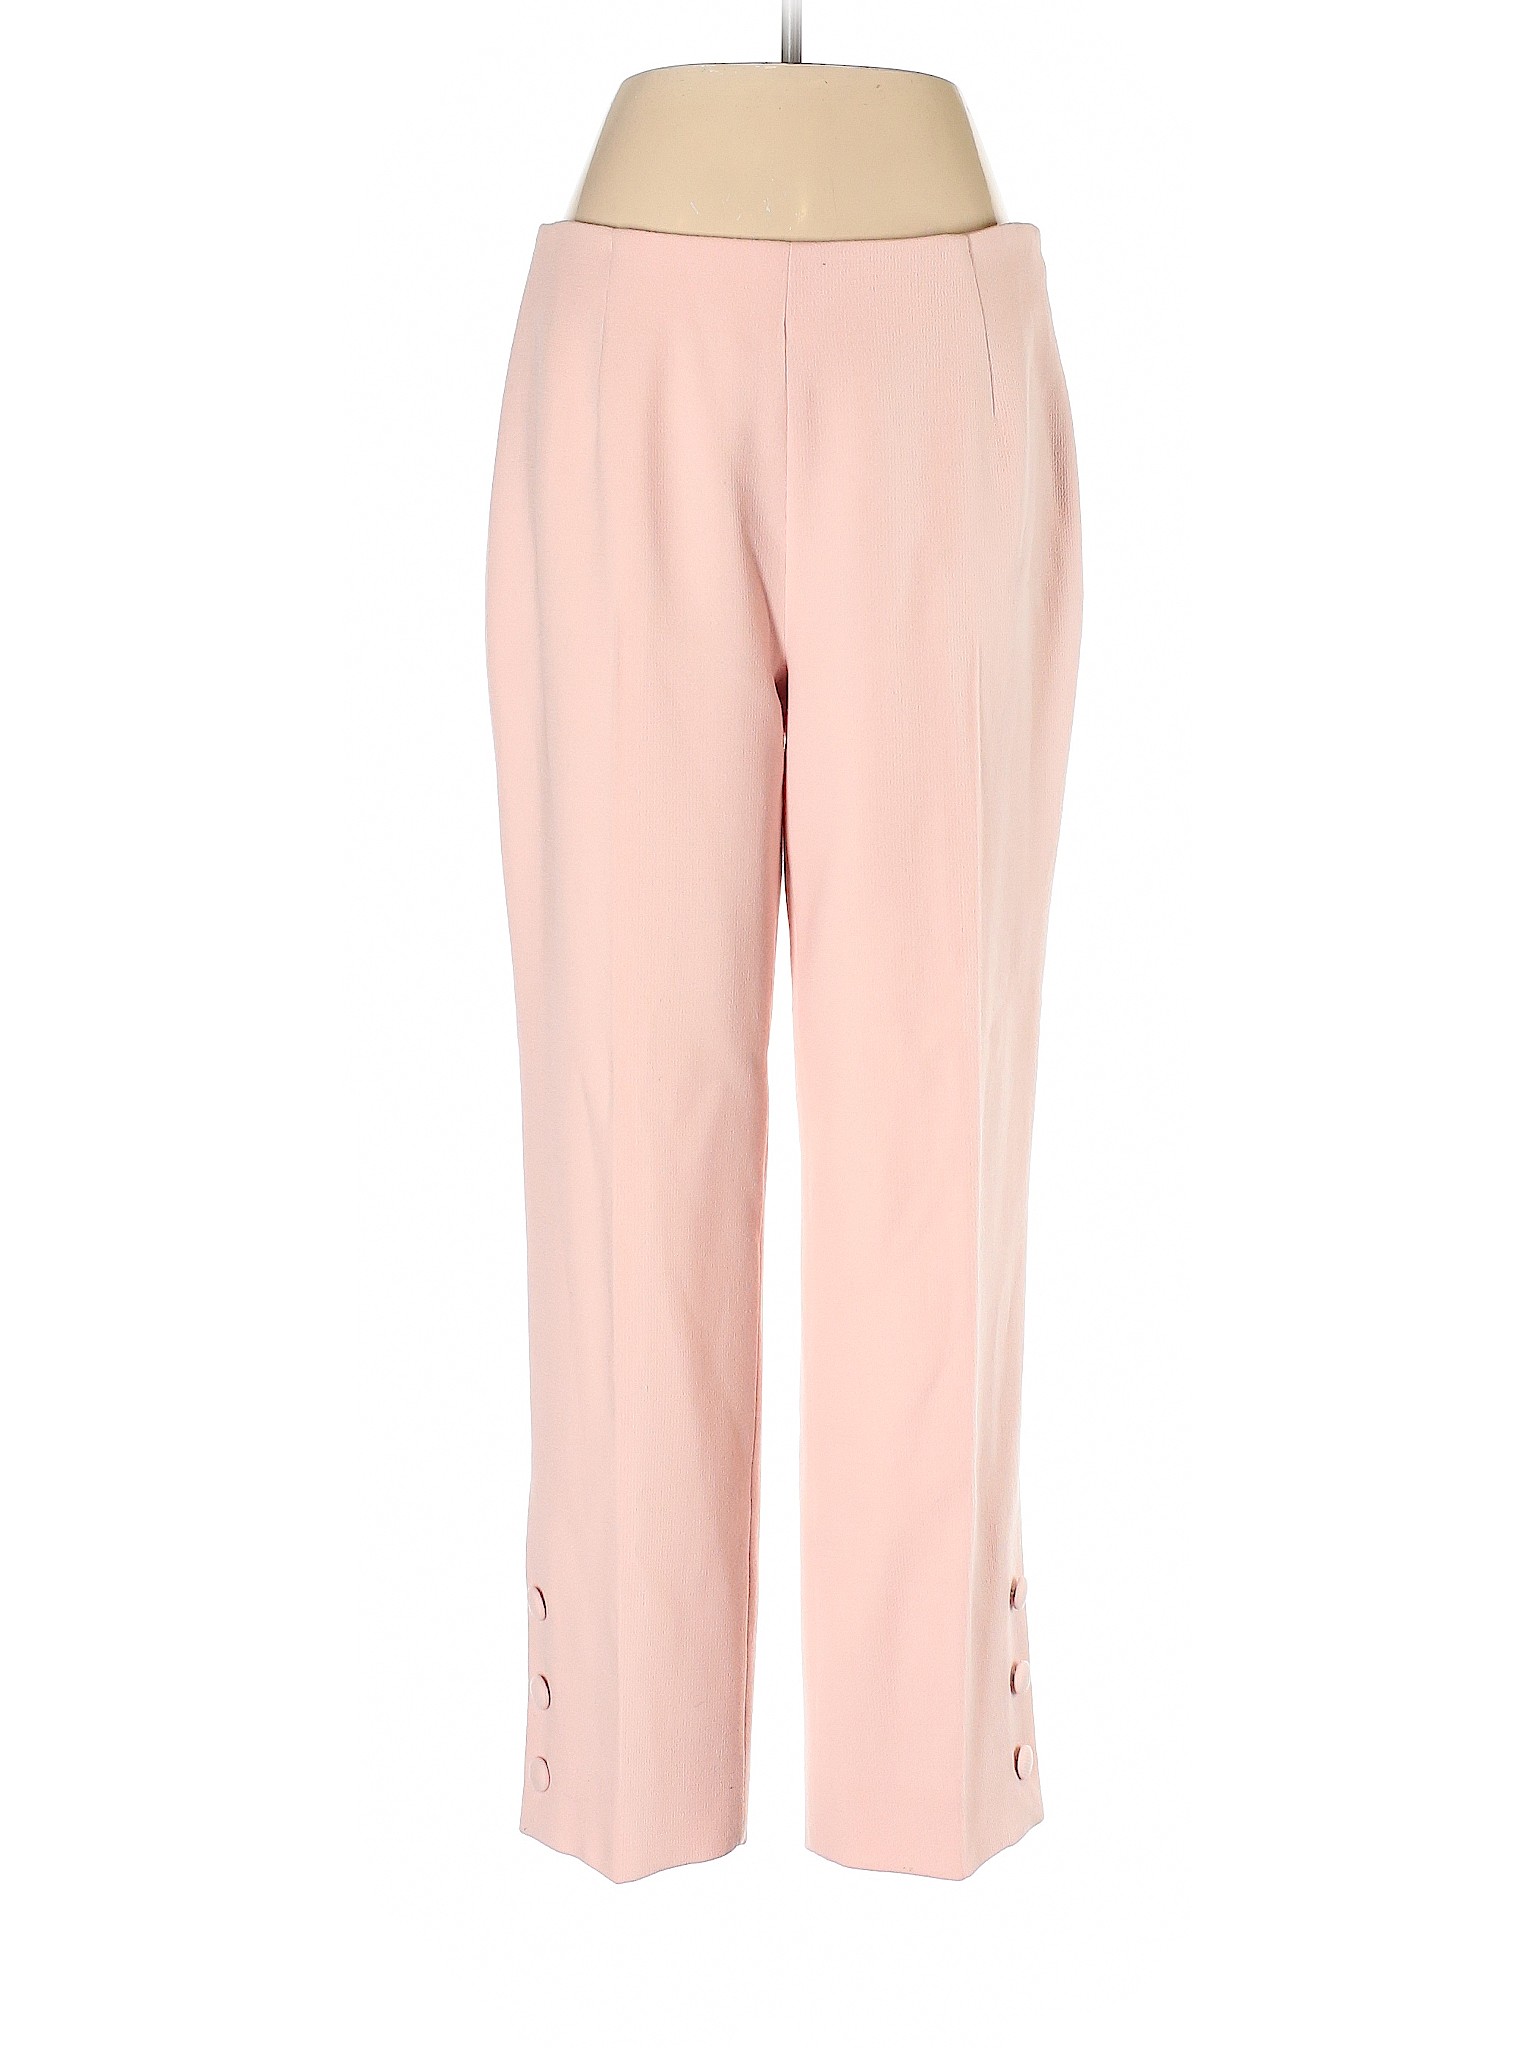 Lela Rose Women Pink Wool Pants 8 | eBay